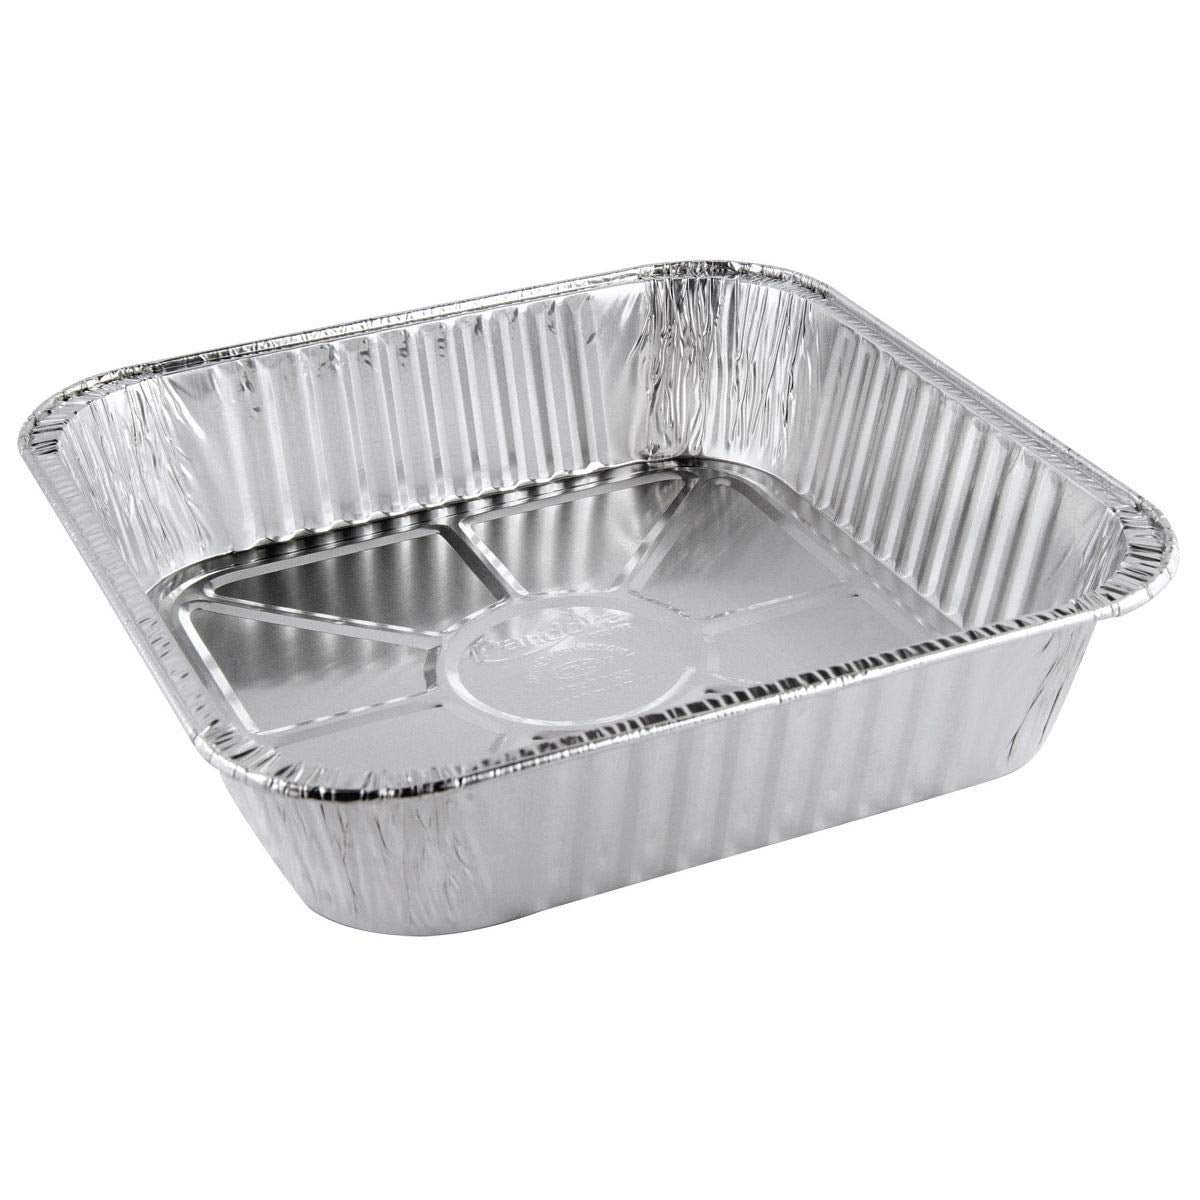 Aluminum Foil Pans Disposable Aluminum Pans Cake Pans Bread Pans with Clear Lids 